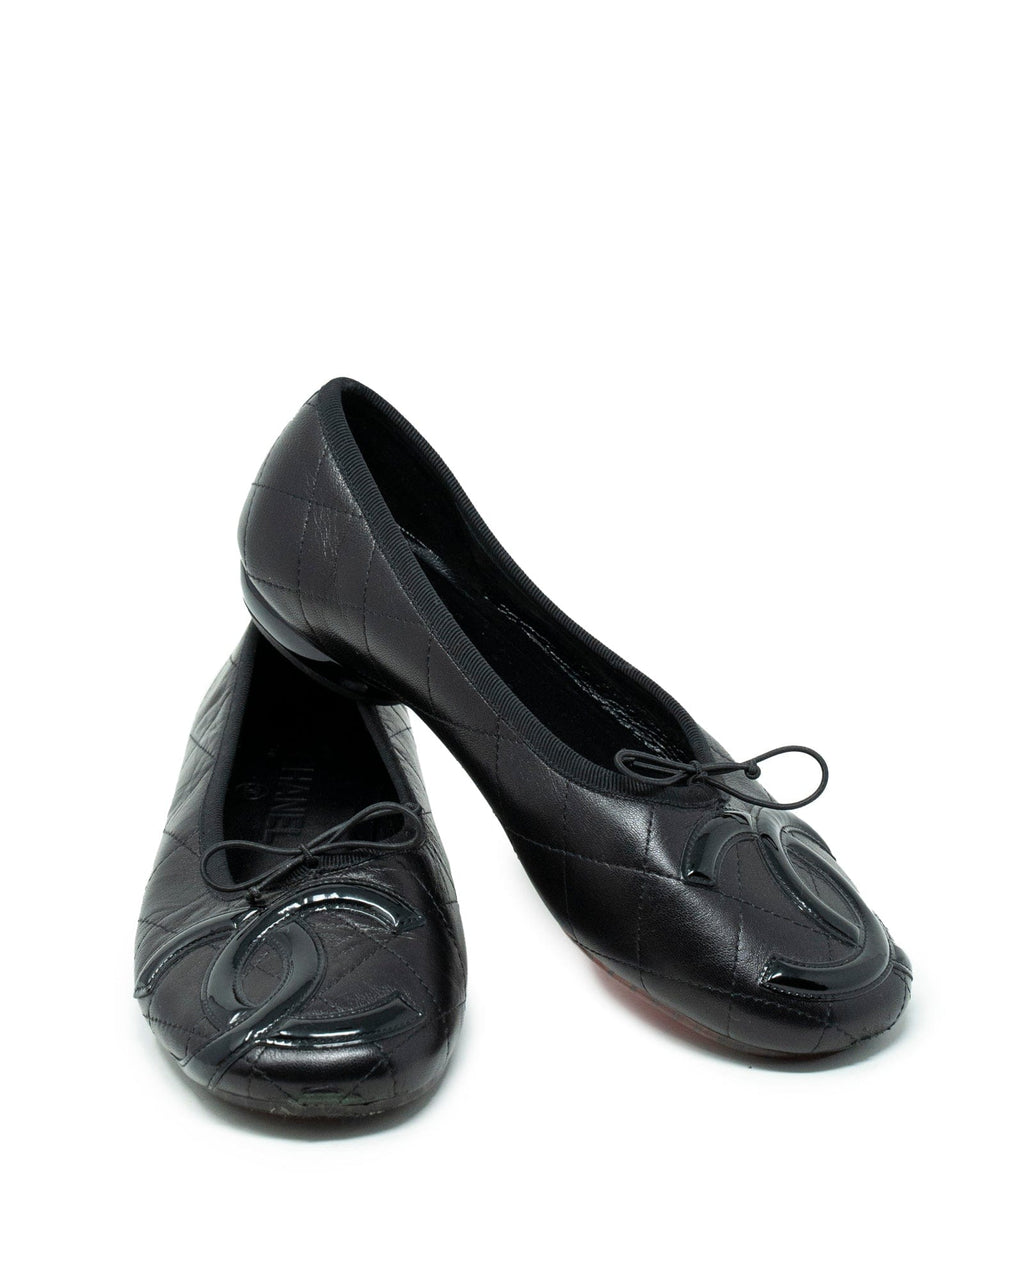 Chanel Rue Cambon Ballet Pumps Shoes size 37 - AWC1179 – LuxuryPromise